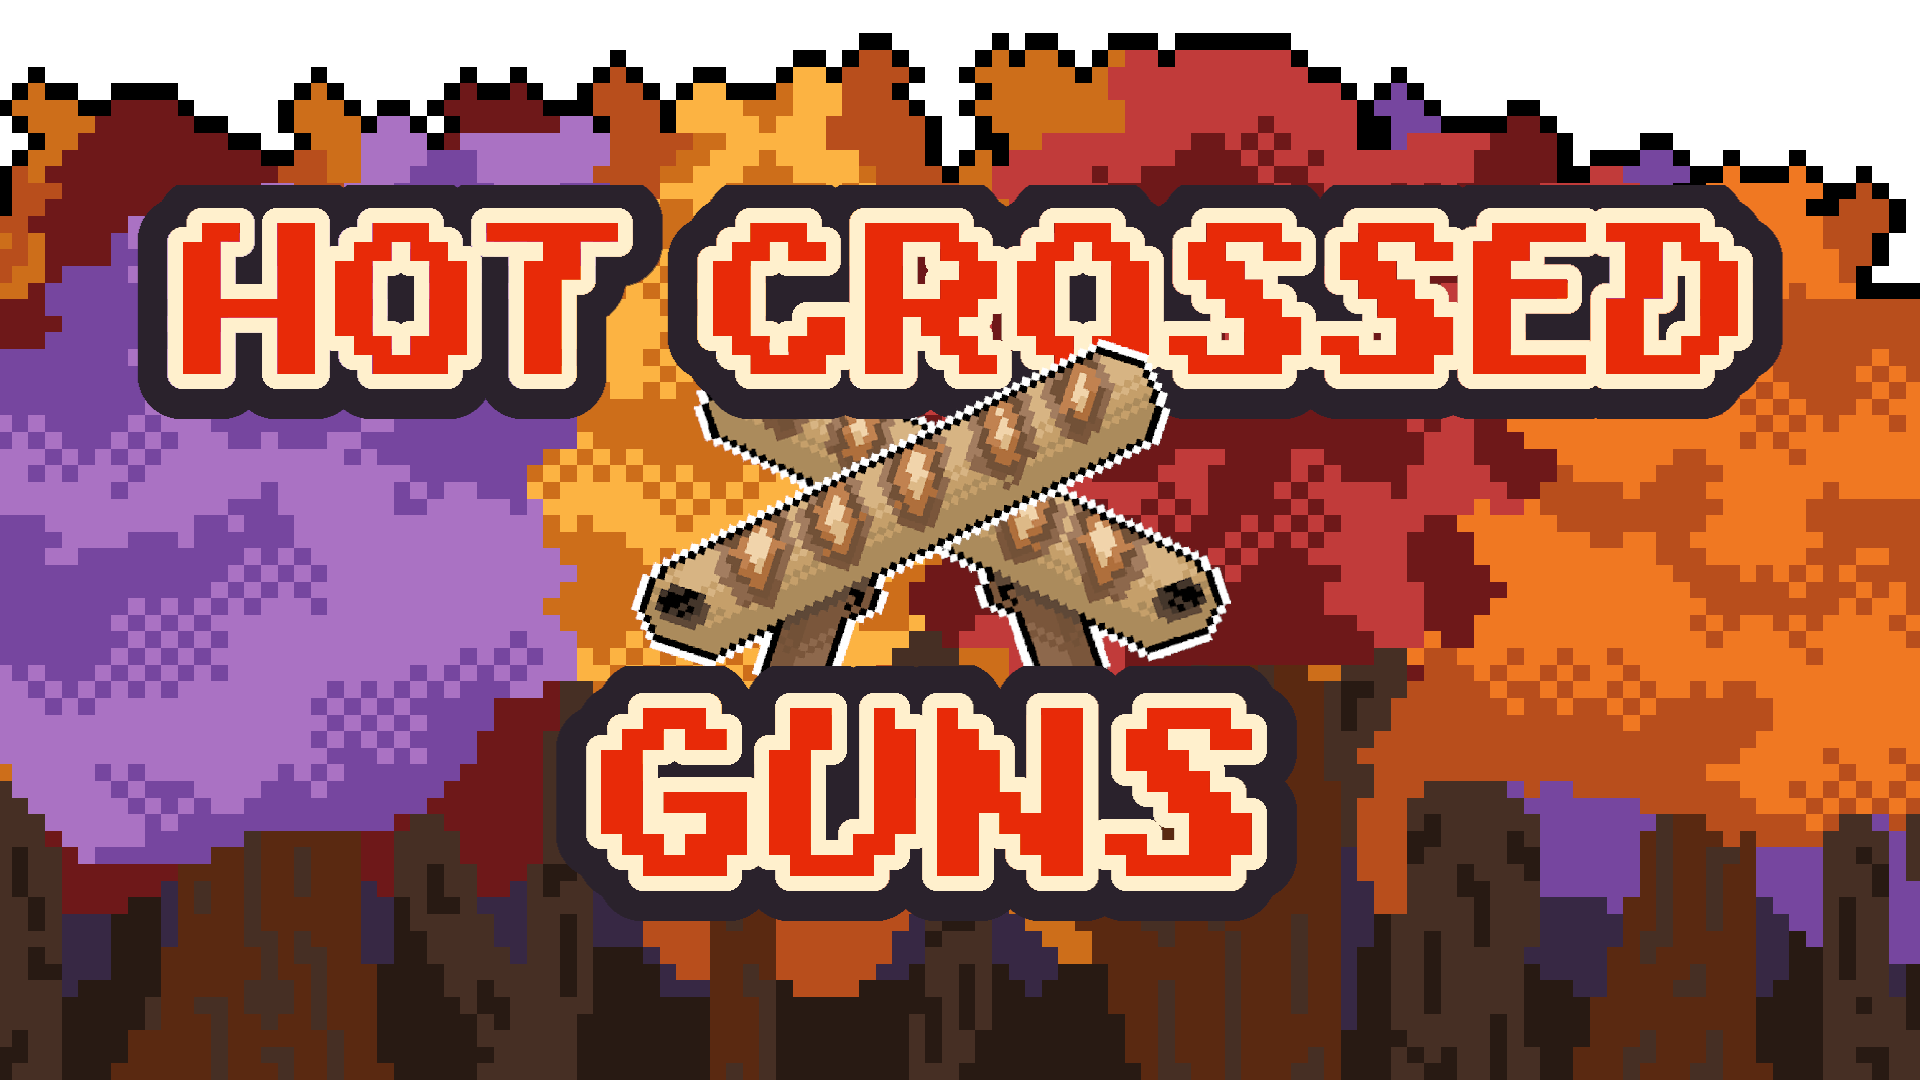 Hot Crossed Guns